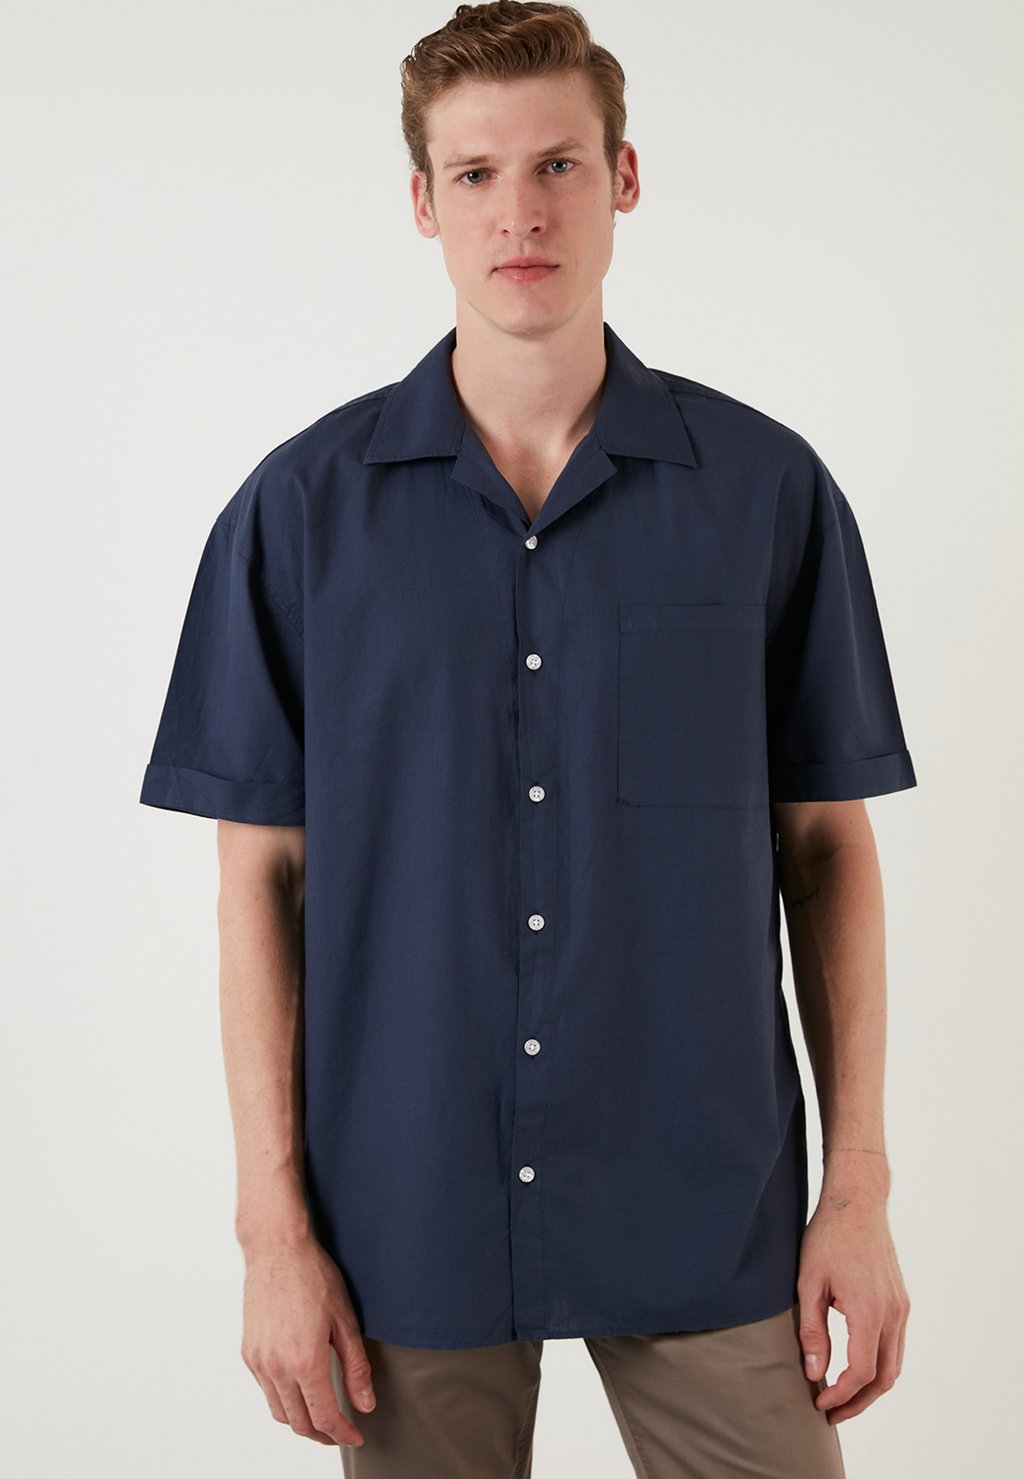 Рубашка REGULAR FIT Buratti, темно-синий рубашка uniqlo flannel regular fit темно синий